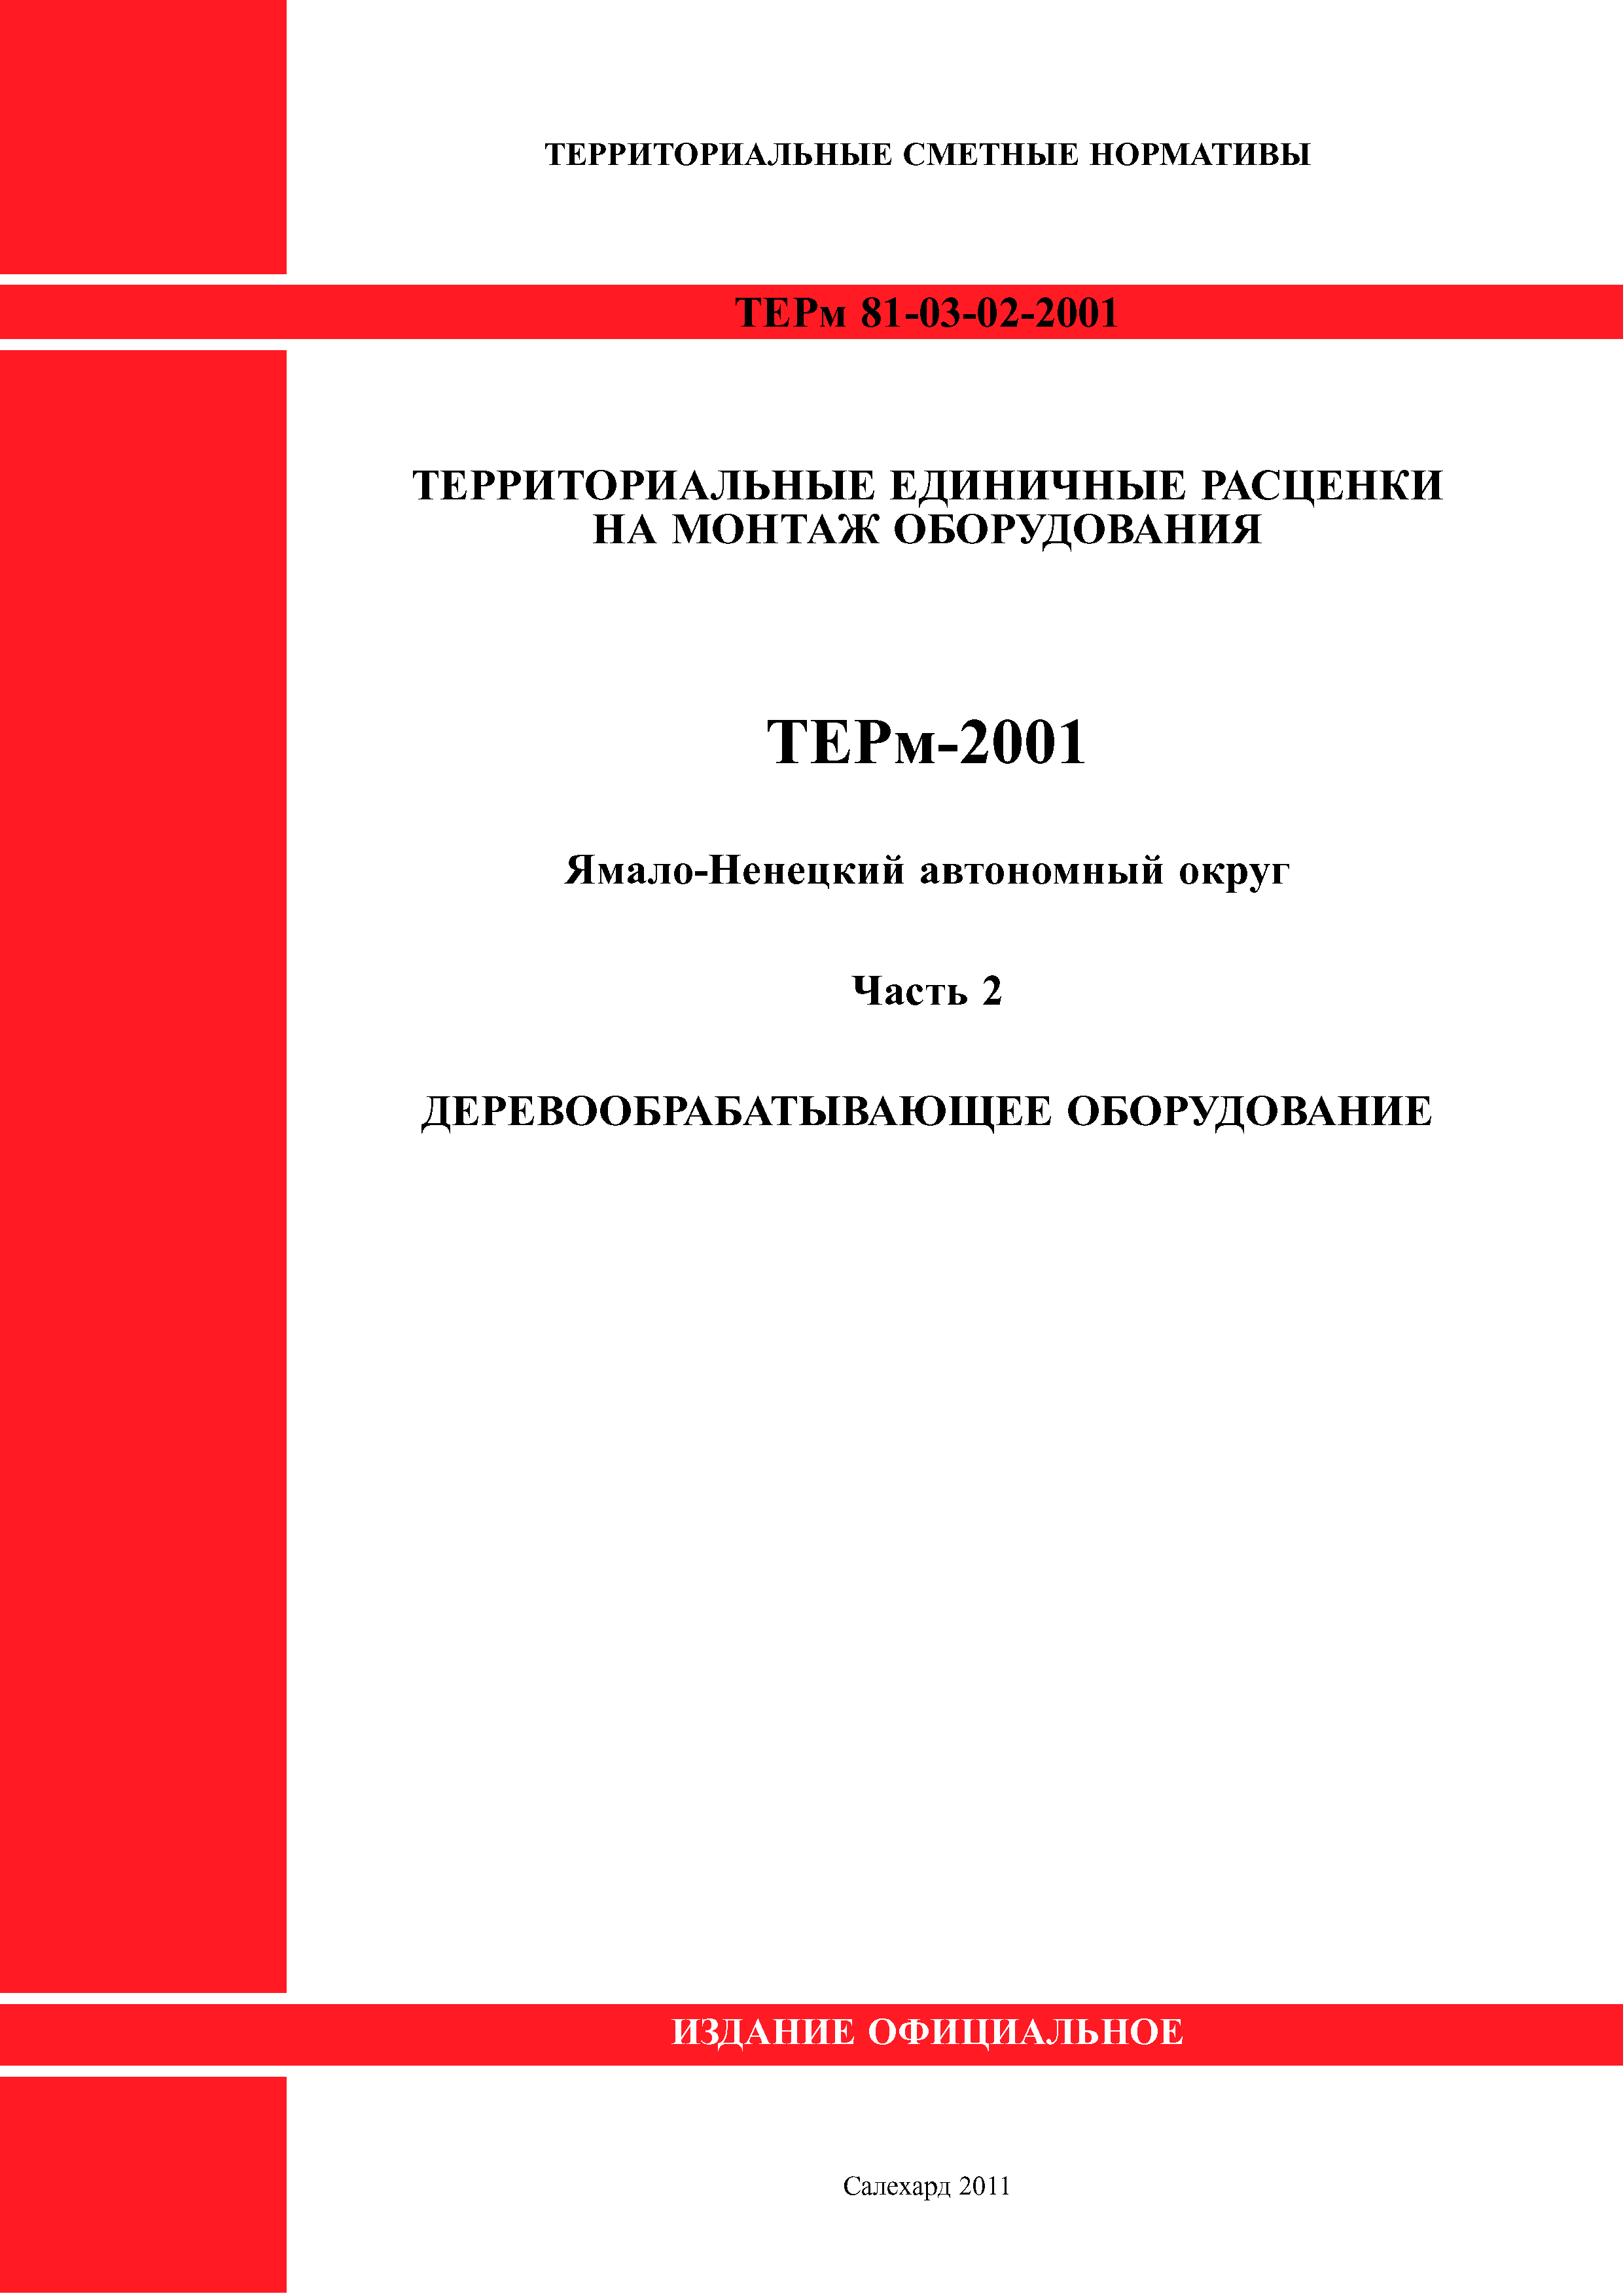 ТЕРм Ямало-Ненецкий автономный округ 02-2001